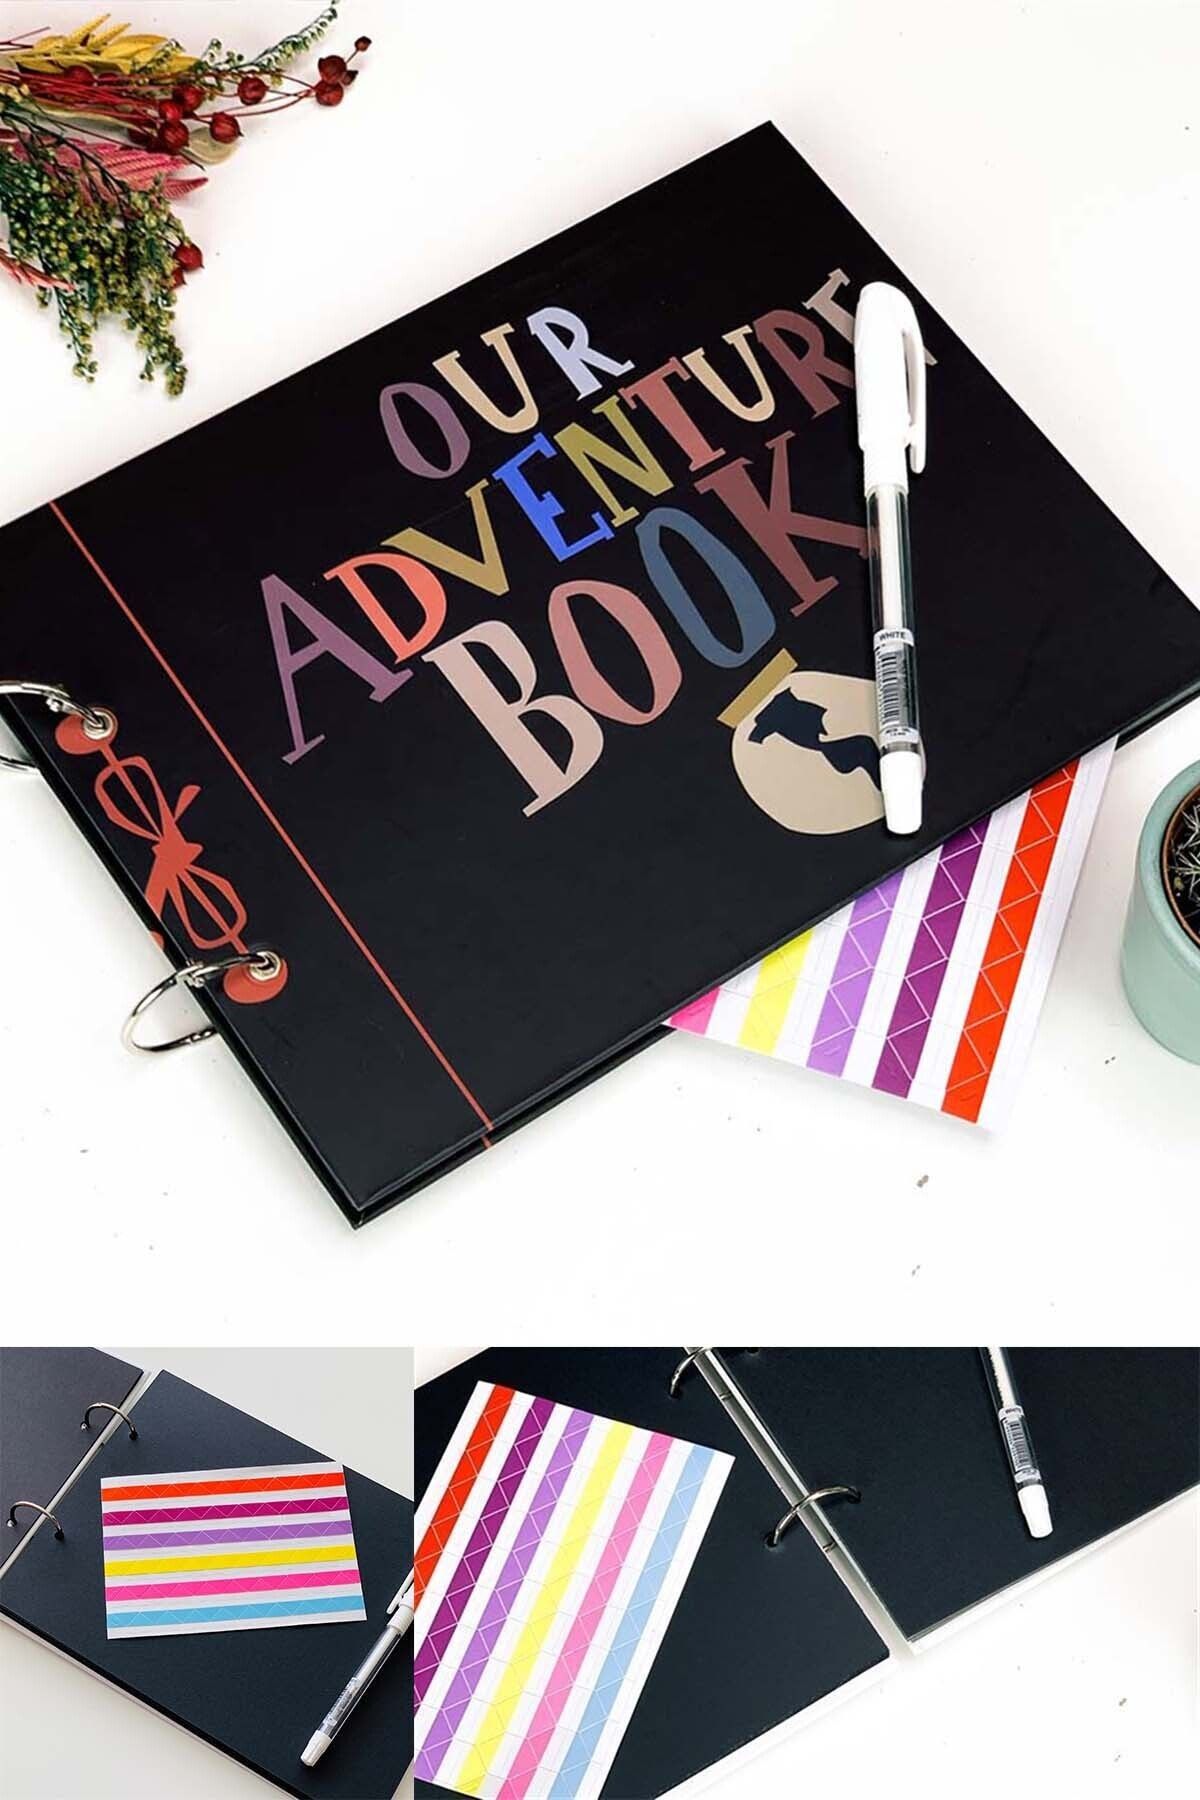 Patladı Gitti Our Adventure Book Tasarımlı Fotoğraf Albümü Anı Defteri; Beyaz Kalem Ve Yapıştırıcı Hediyeli